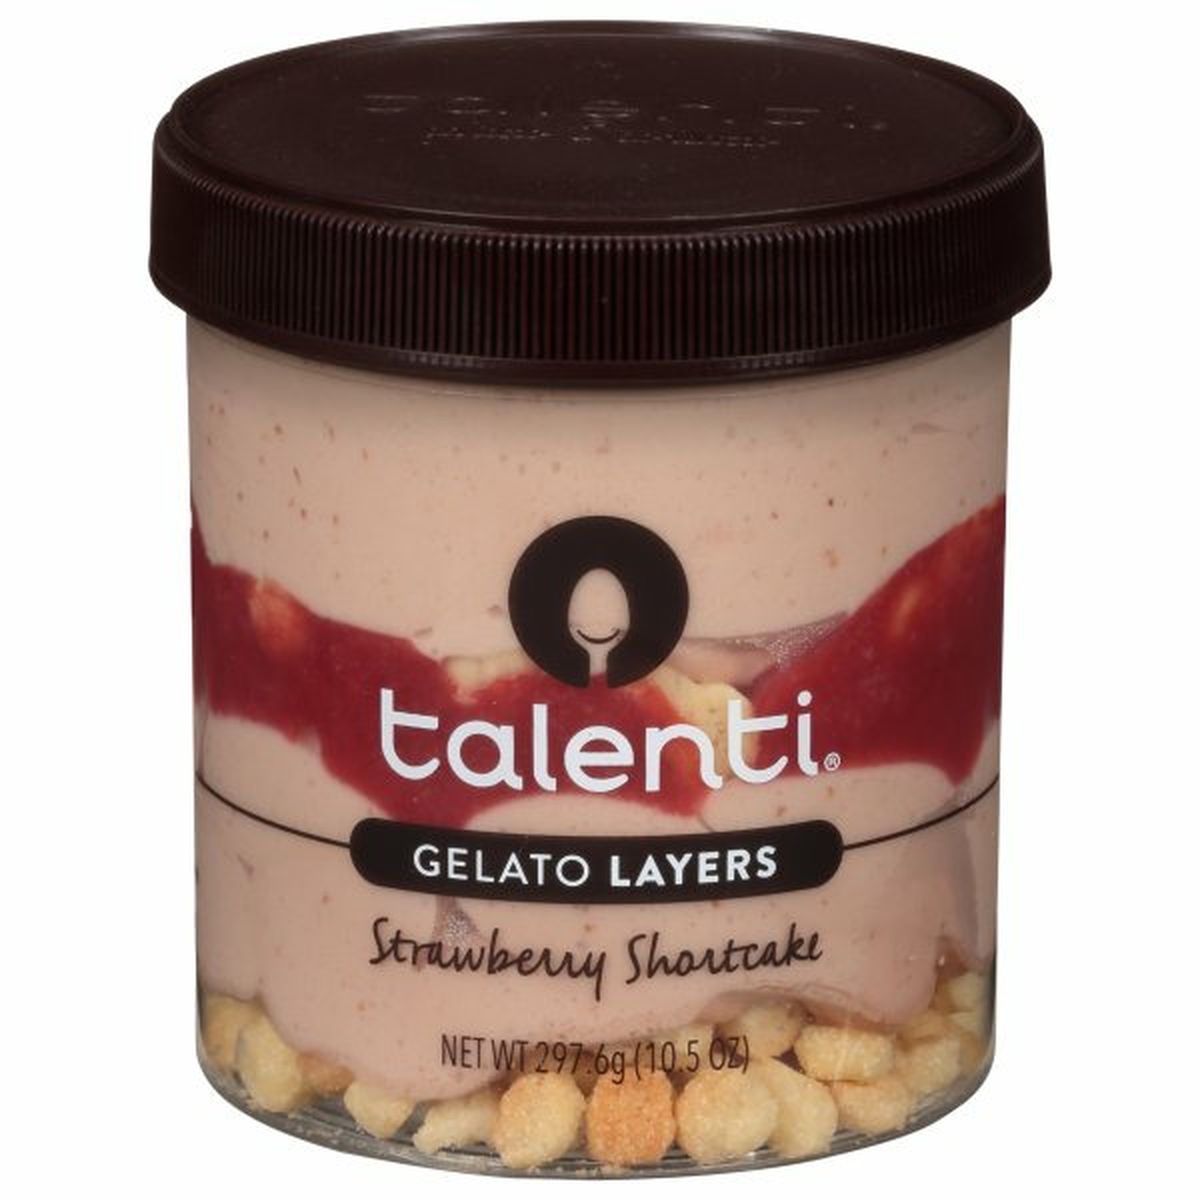 Calories in Talenti Gelato Layers, Strawberry Shortcake